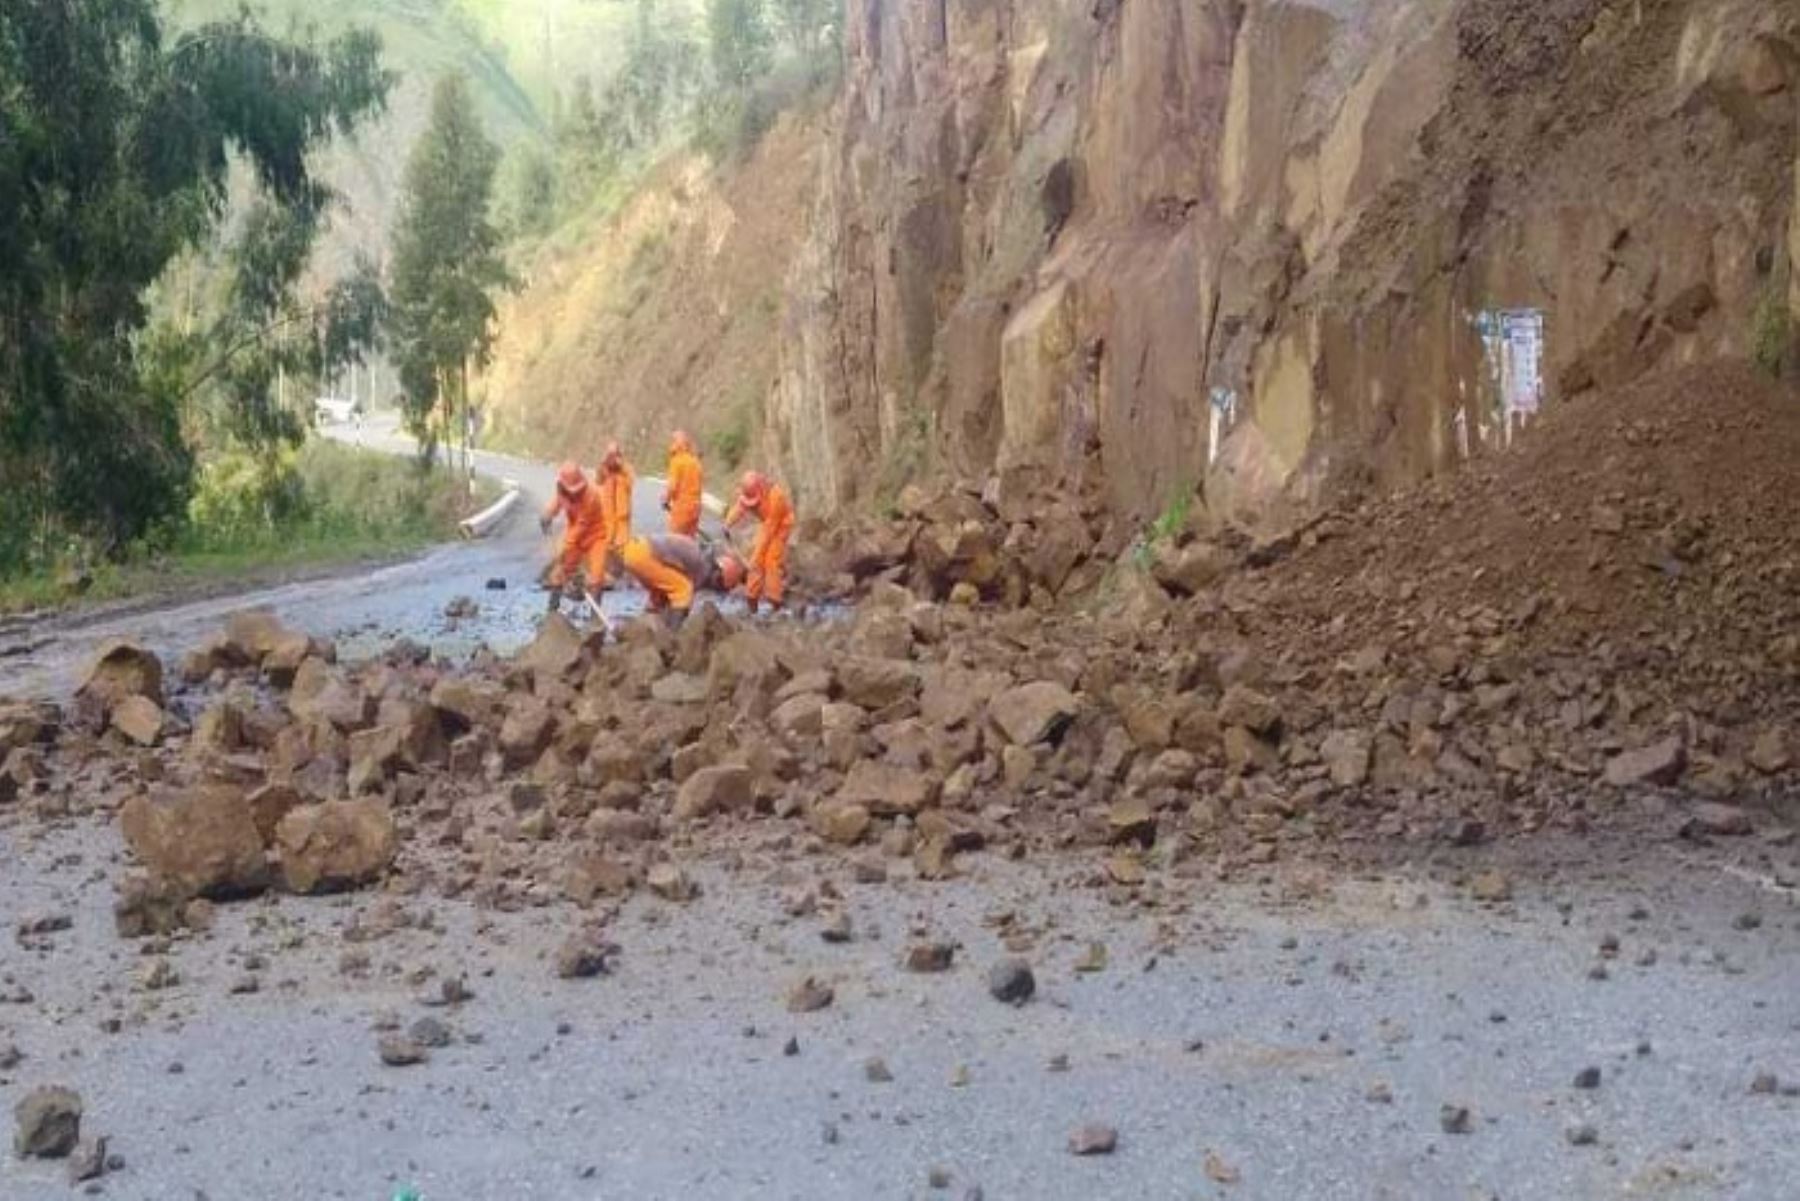 La vía Casma - Huaraz ha sido afectada nuevamente por derrumbes a causa de las lluvias intensas que se registran, informó hoy el Centro de Operaciones de Emergencia Regional (COER) de Áncash.